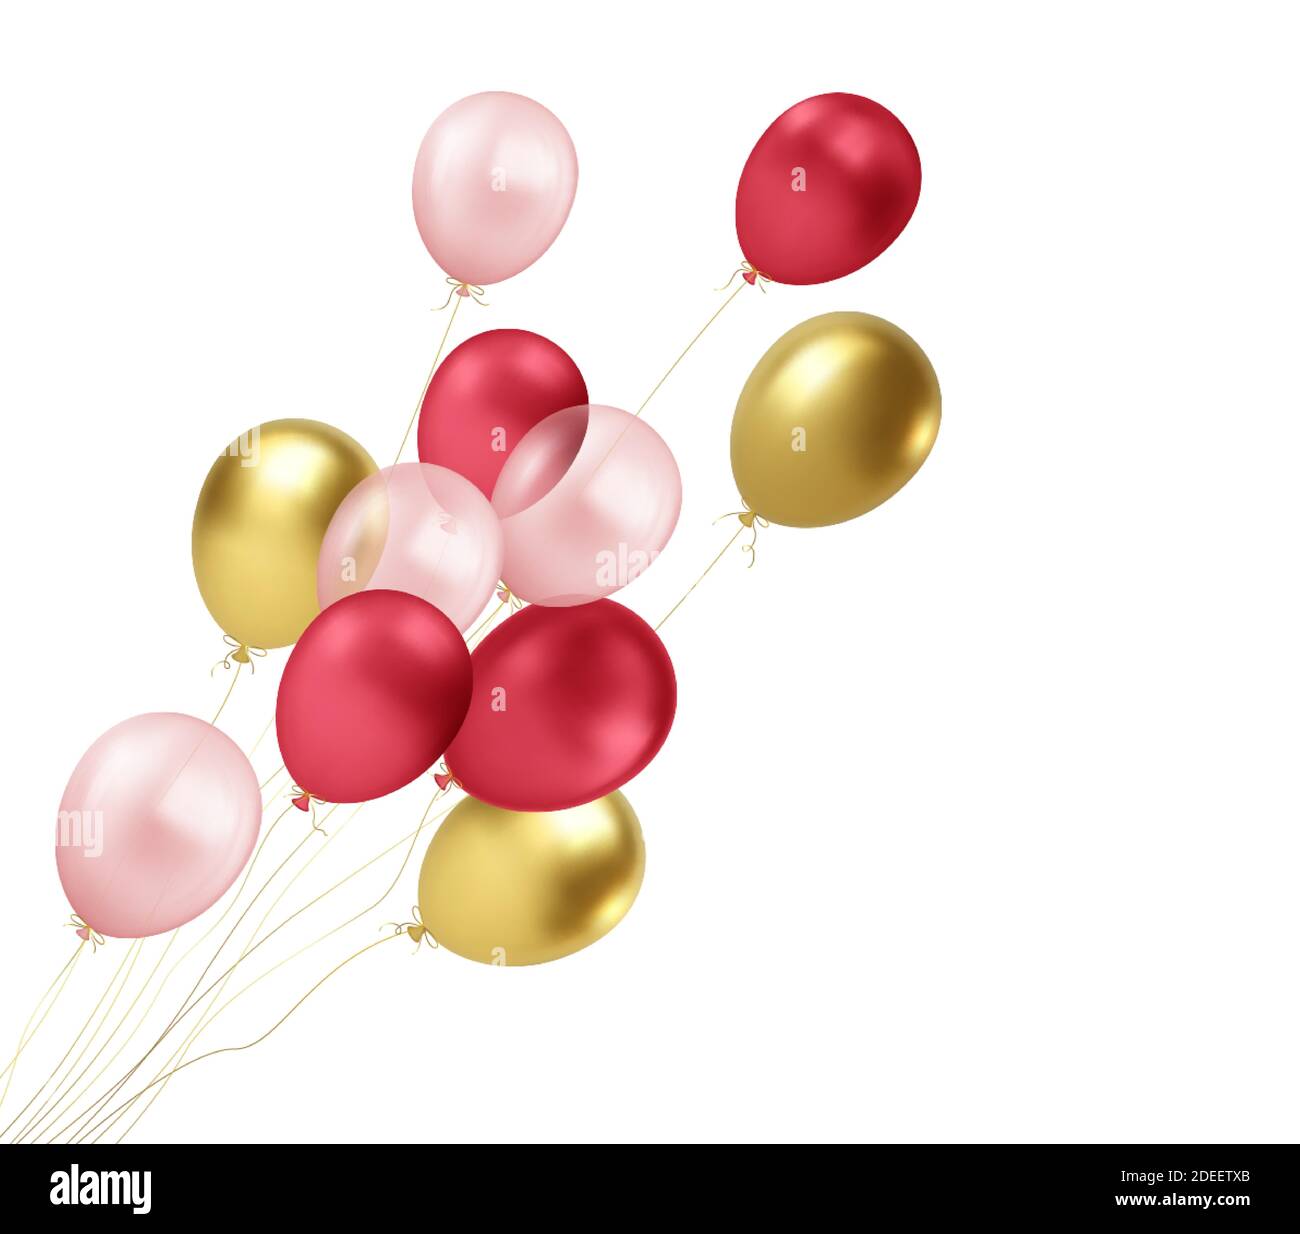 Ballons réalistes or, rouge, rose volant isolé sur fond blanc. Élément de design pour poster anniversaire de mariage, carte postale. Illustration vectorielle Illustration de Vecteur